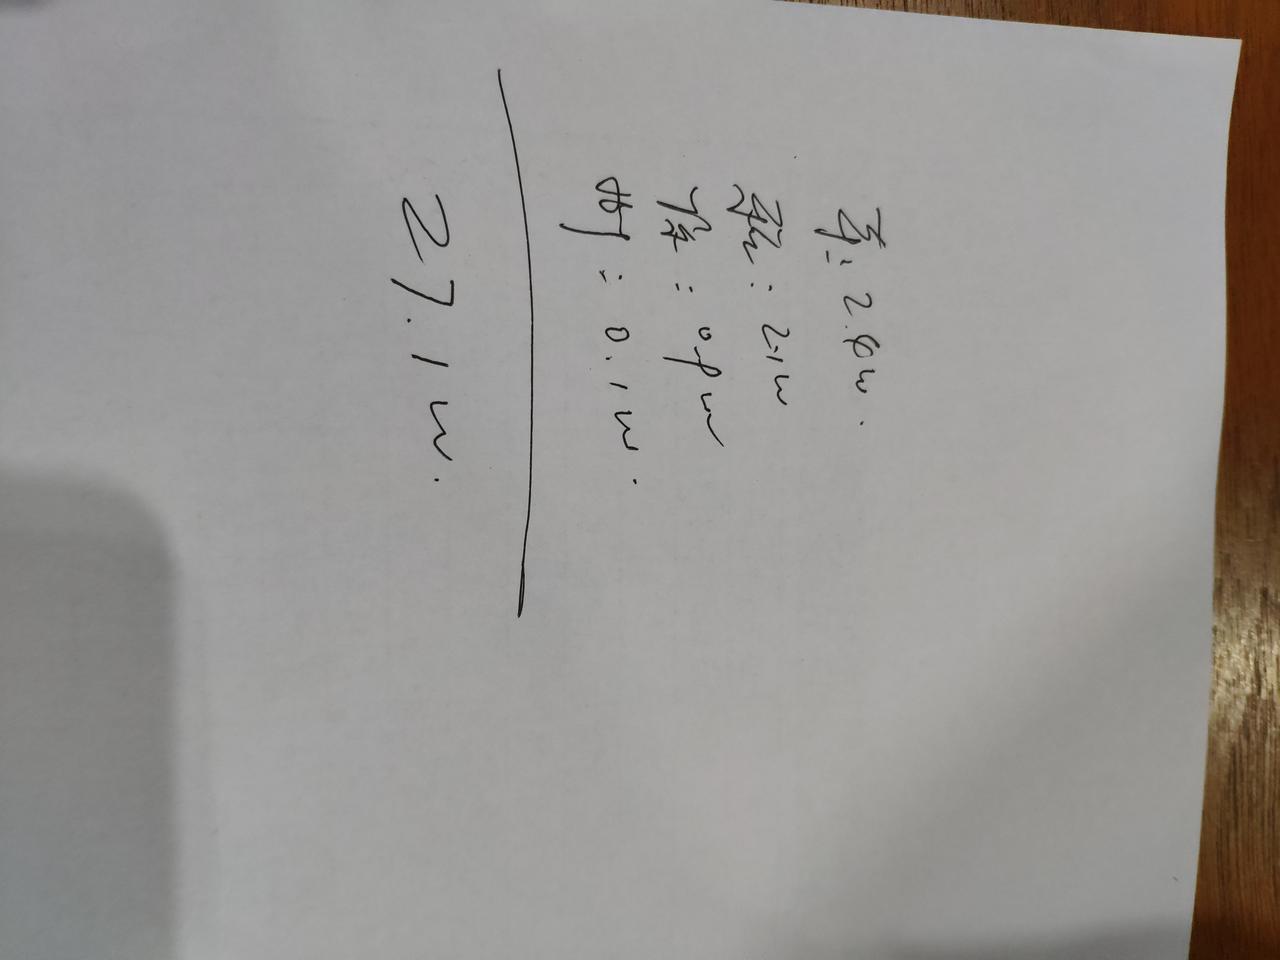 宝马x1 武汉市想买x125领先销售给我裸车报价23.3w相当于26.4w落地这个价格还能砍多少各位车友